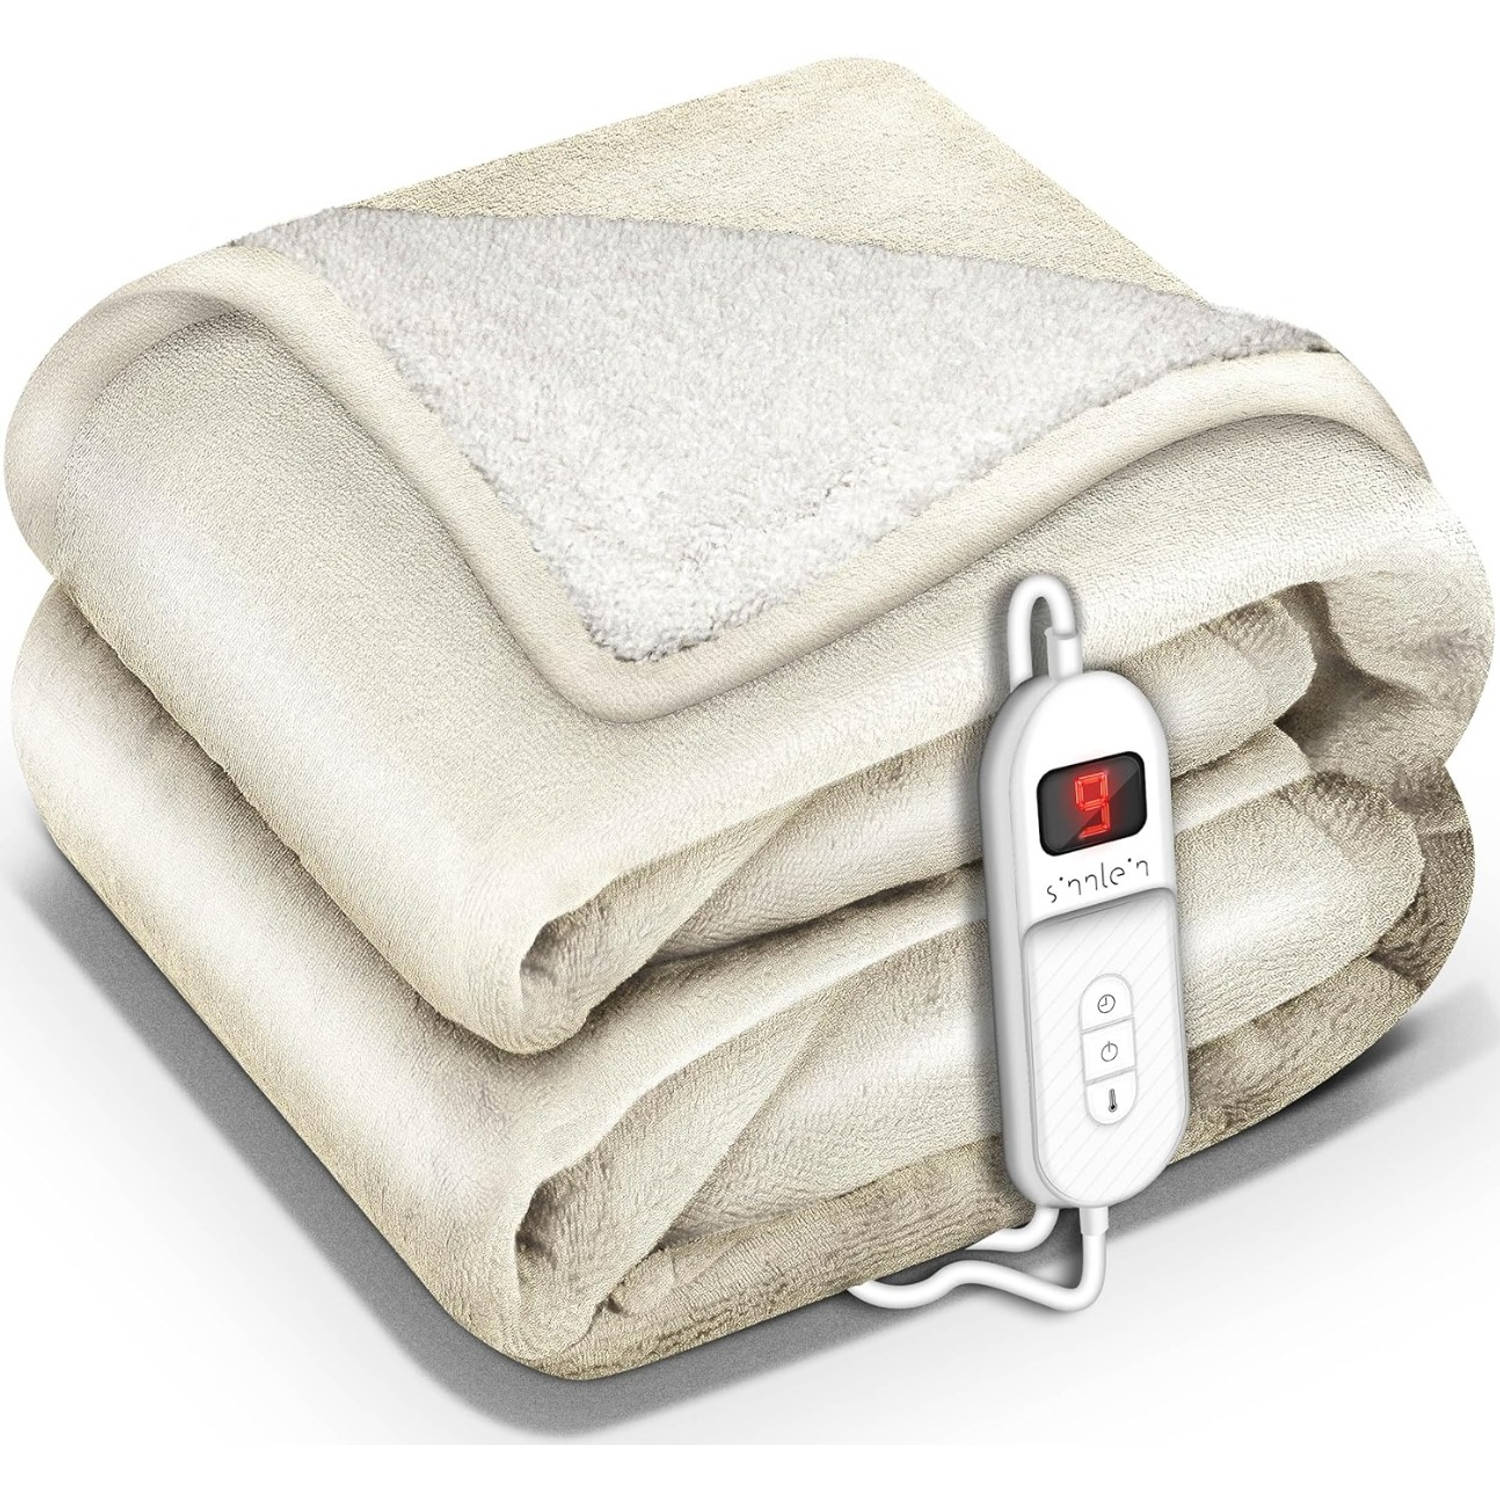 Sinnlein- Elektrische deken met automatische uitschakeling, beige, 180x130 cm, warmtedeken met 9 tem